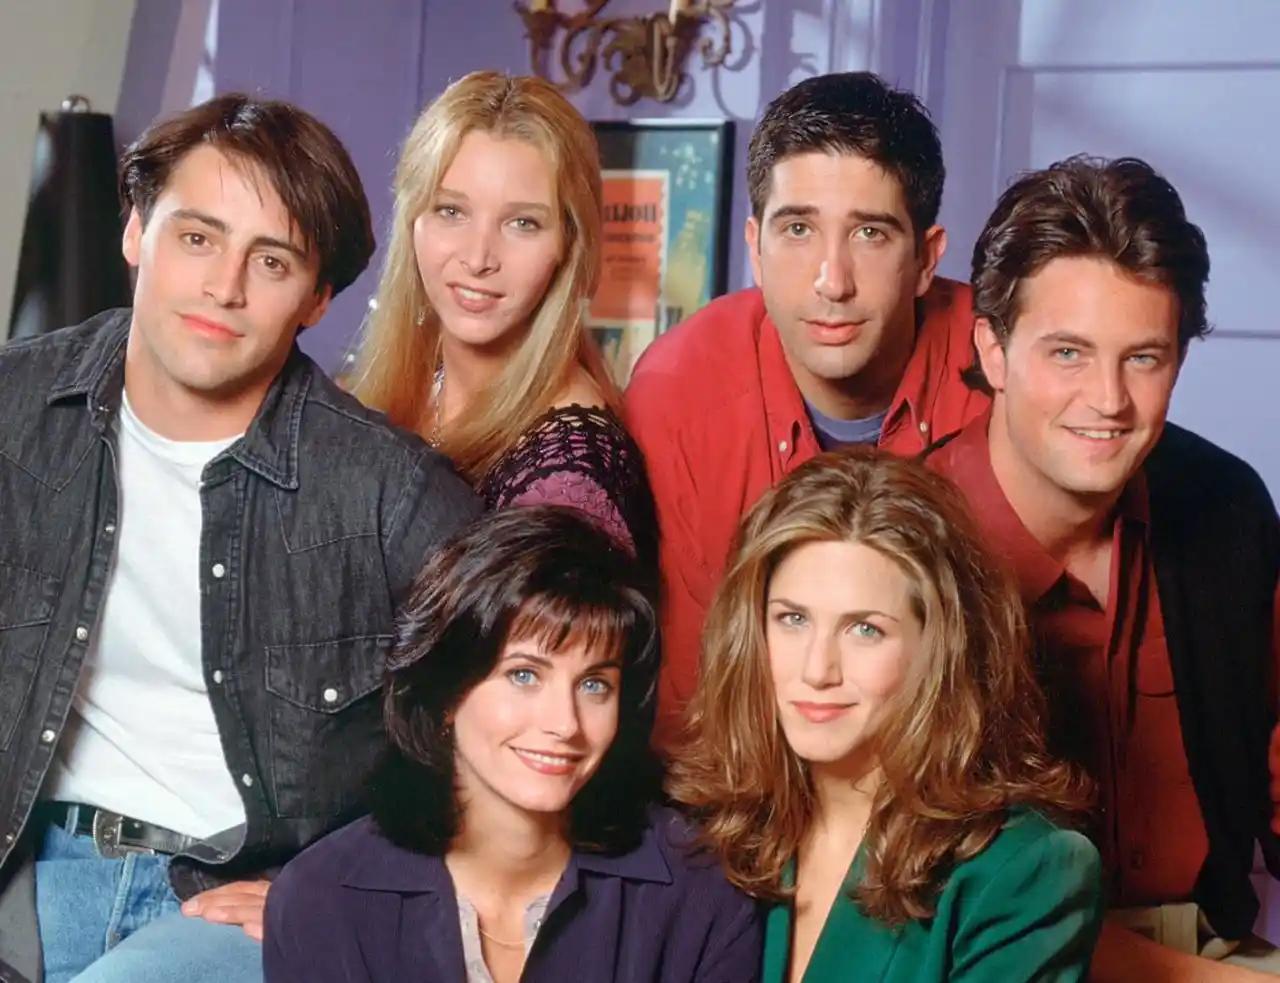 Subastan guiones de episodios de ‘Friends’ por más de 473,000 pesos